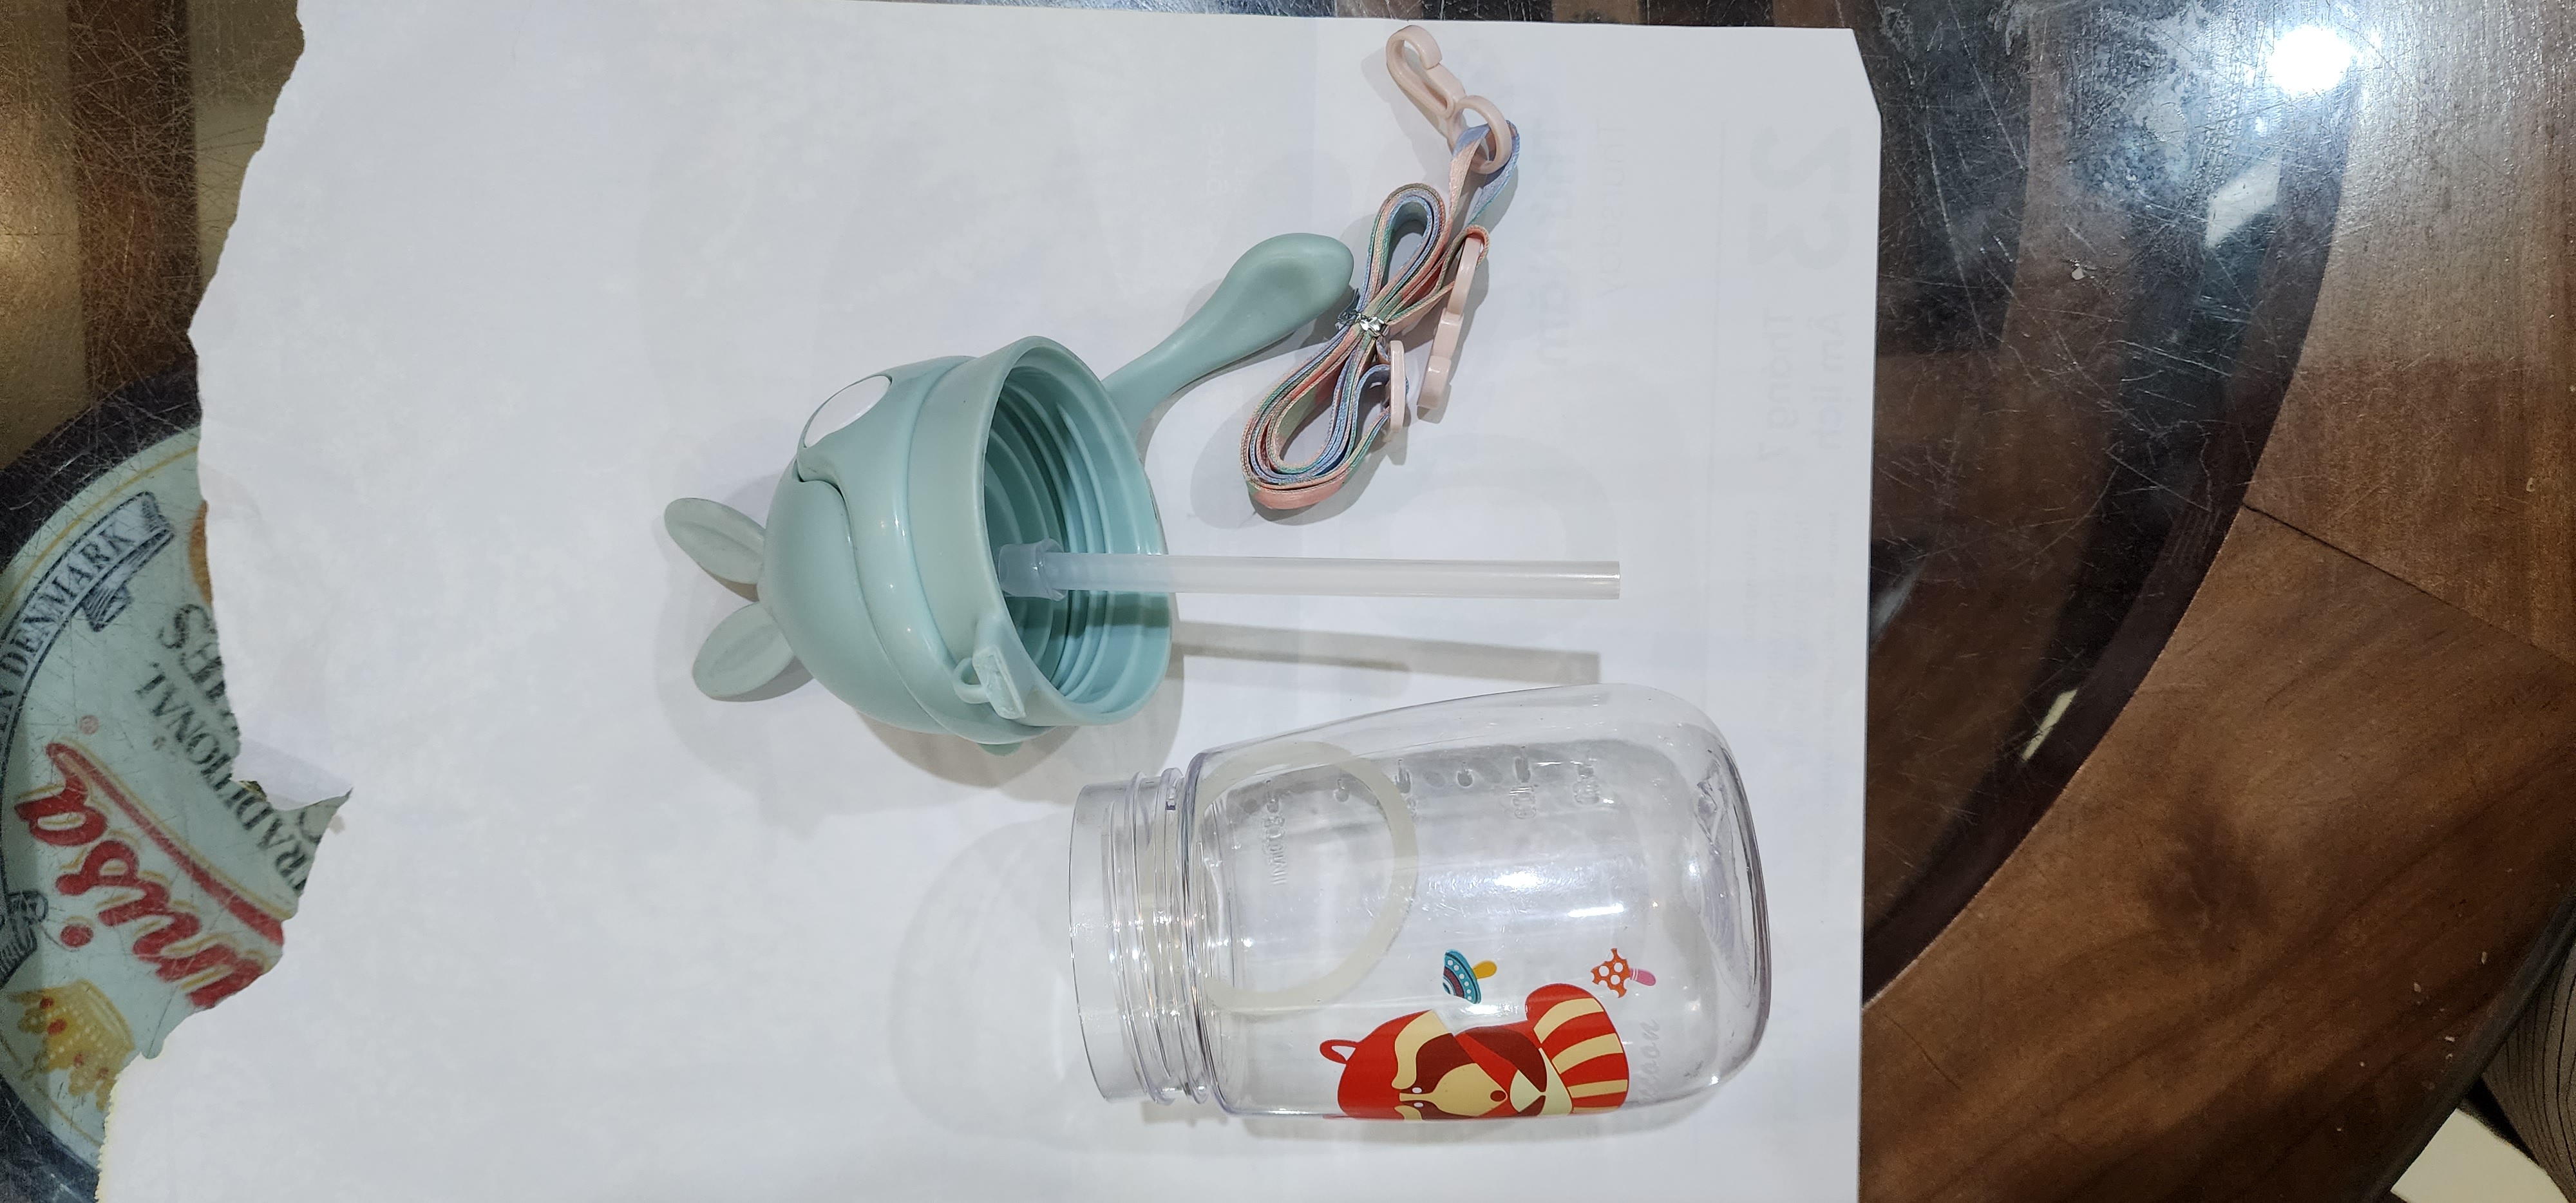 Bình Uống Nước Cho Bé  có dây đeo có 1 tai như hình ảnh) •Chất liệu: nhựa PP an toàn • •Có Dây Đeo Tay Cầm Tiện Lợi.